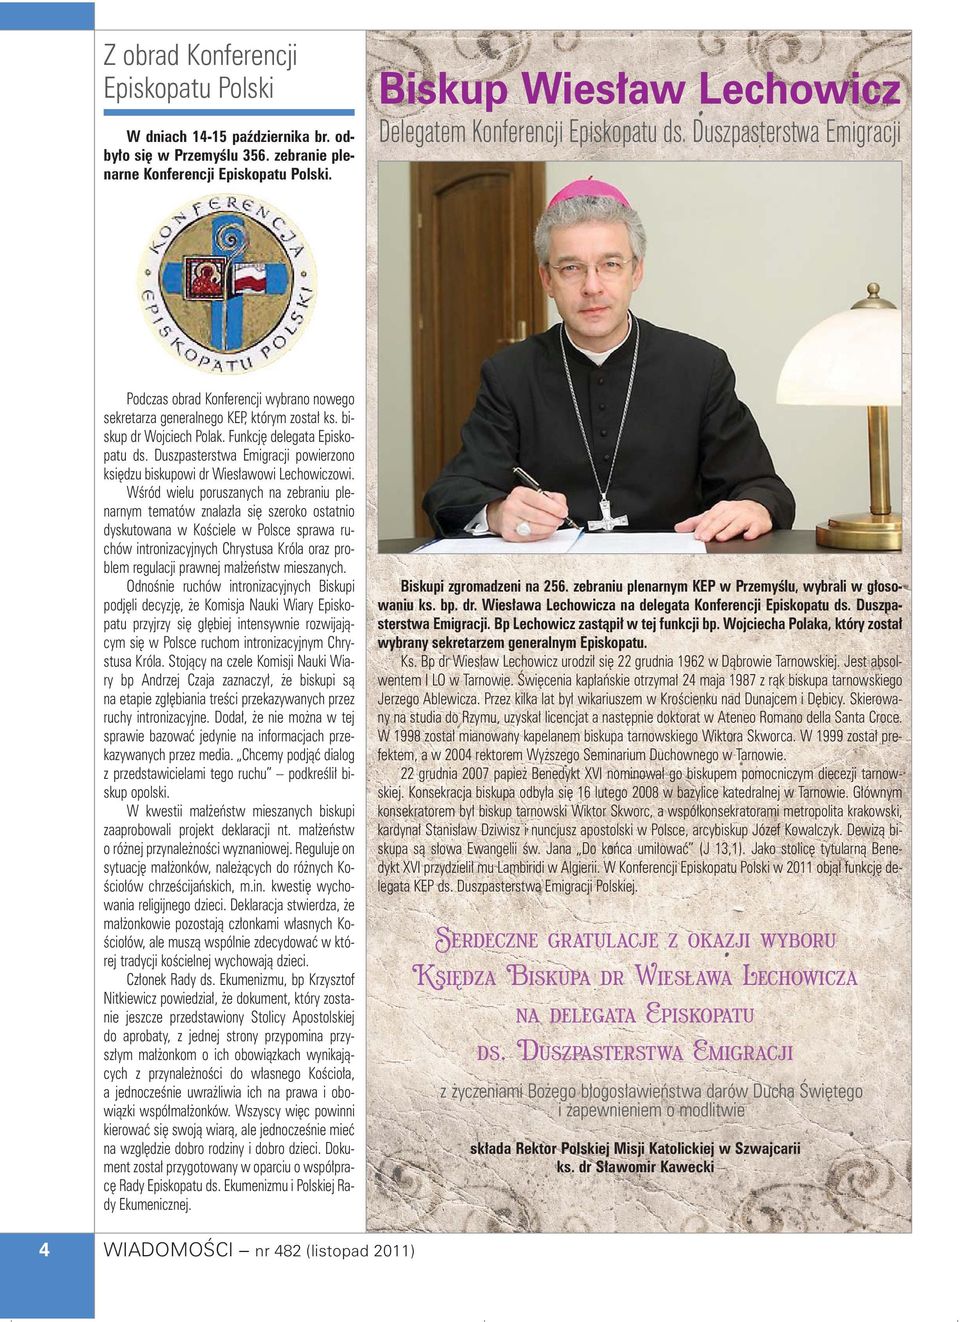 Funkcj delegata Episkopatu ds. Duszpasterstwa Emigracji powierzono ksi dzu biskupowi dr Wies awowi Lechowiczowi.